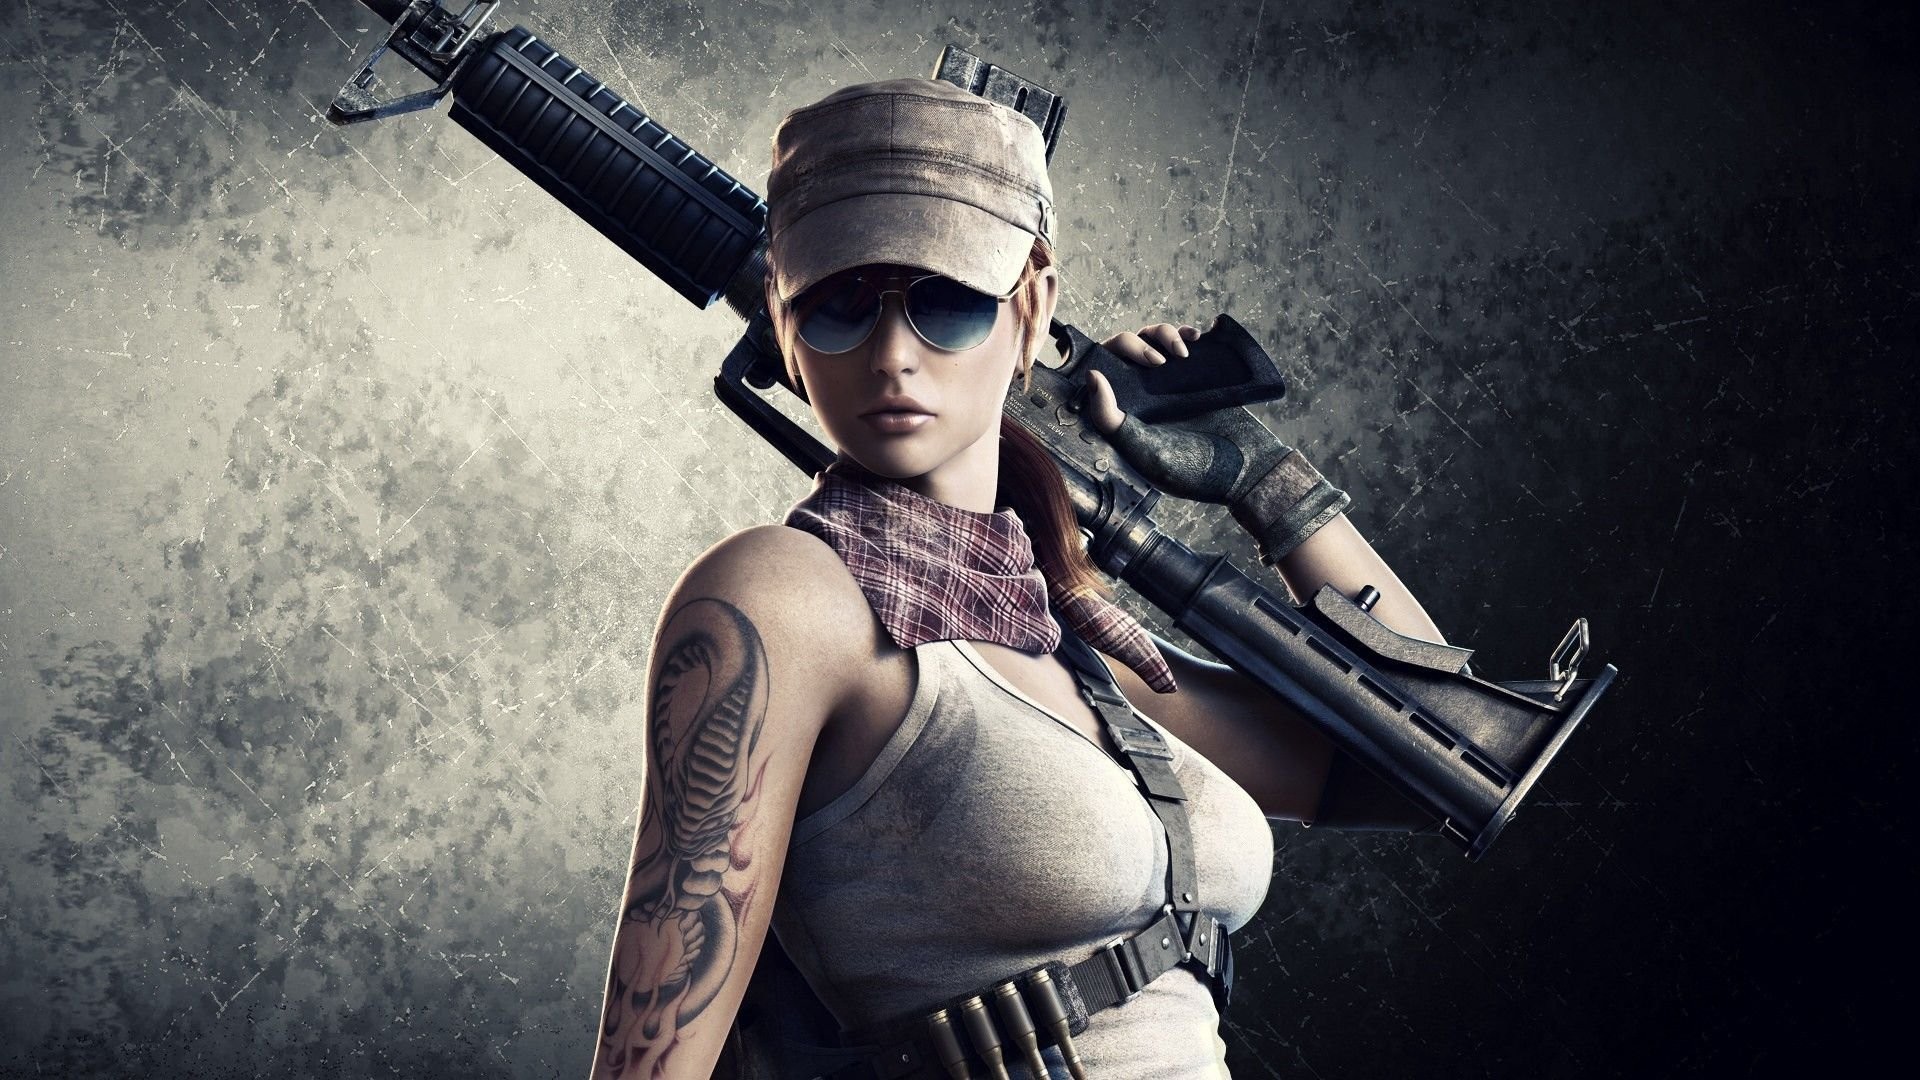 Gamer Girl Wallpaper Image